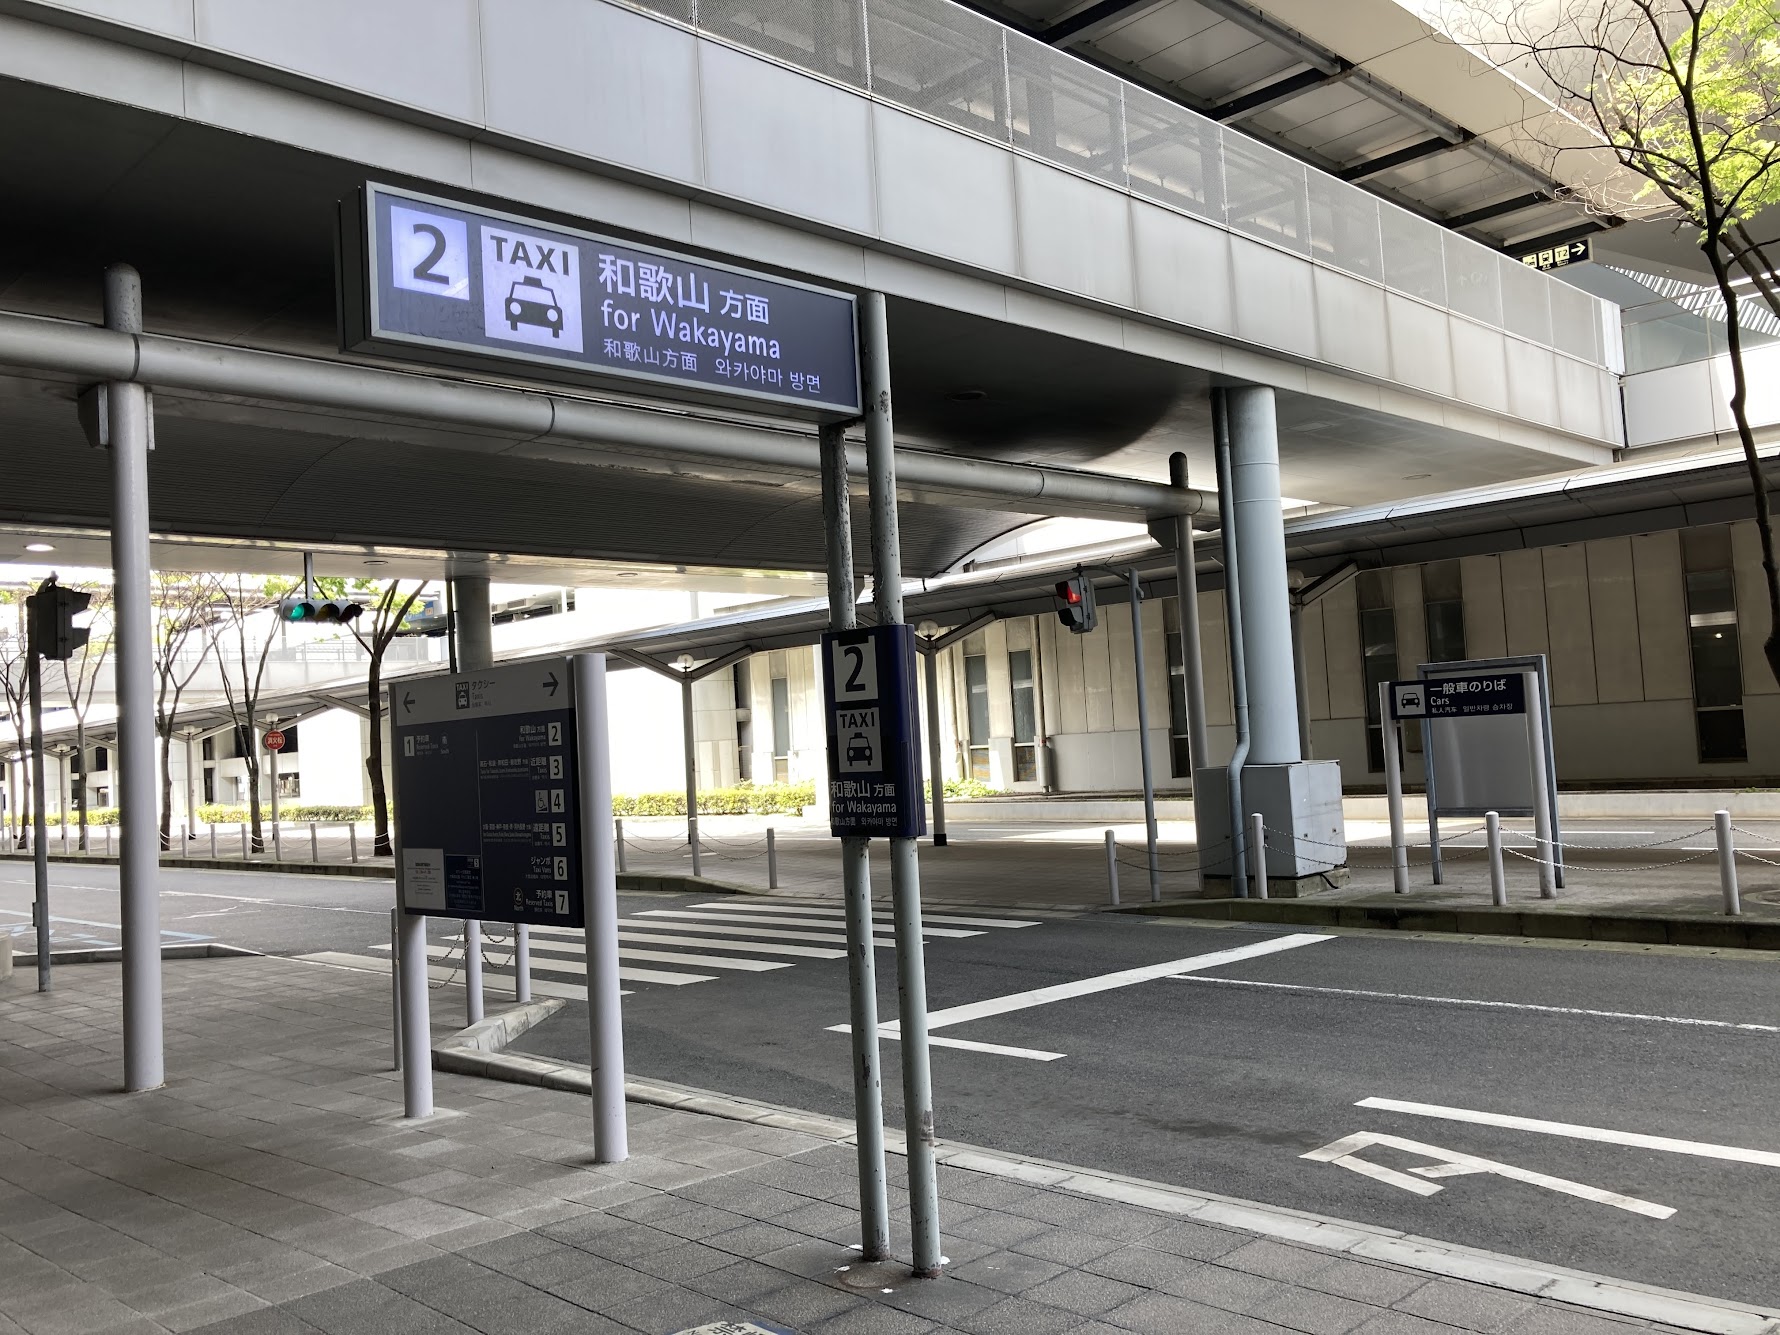 Taxi stand for Wakayama at Kansai airport